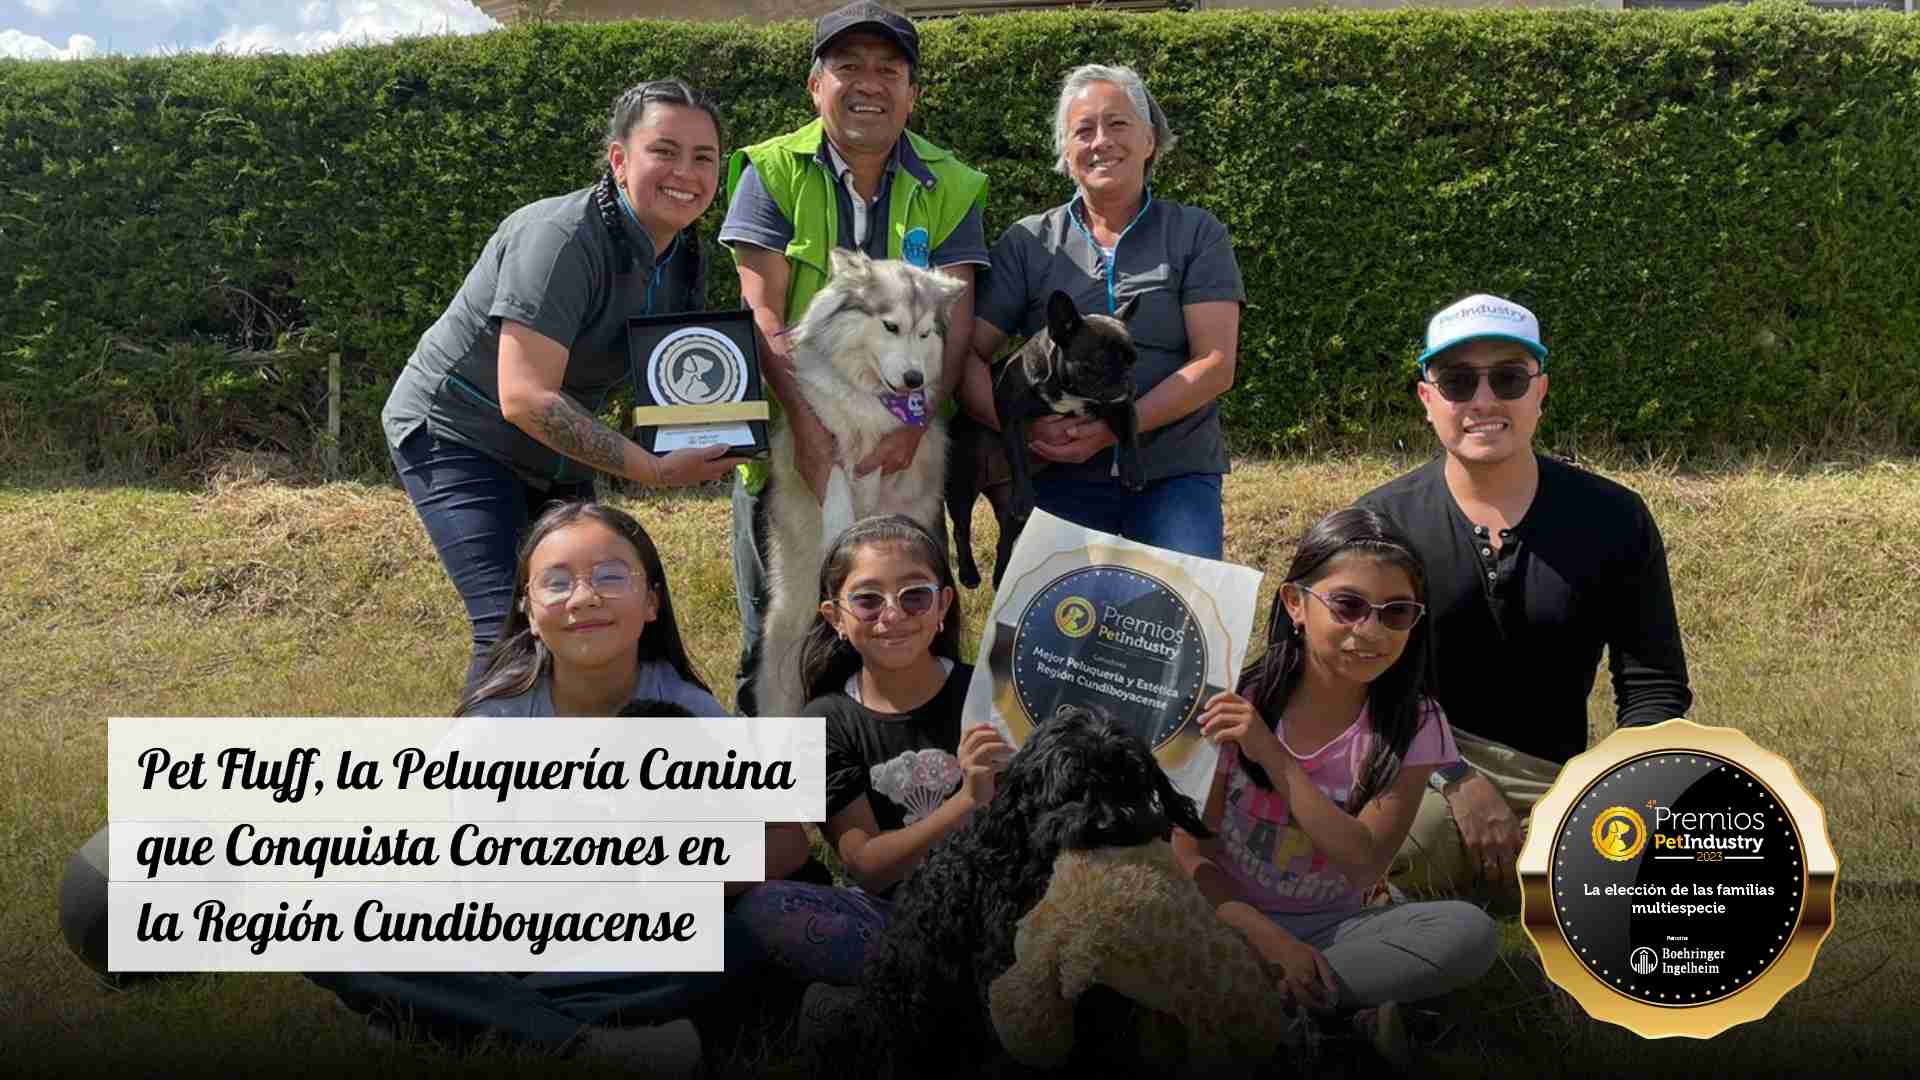 Pet Fluff, la Peluquería Canina que Conquista Corazones en la Región Cundiboyacense